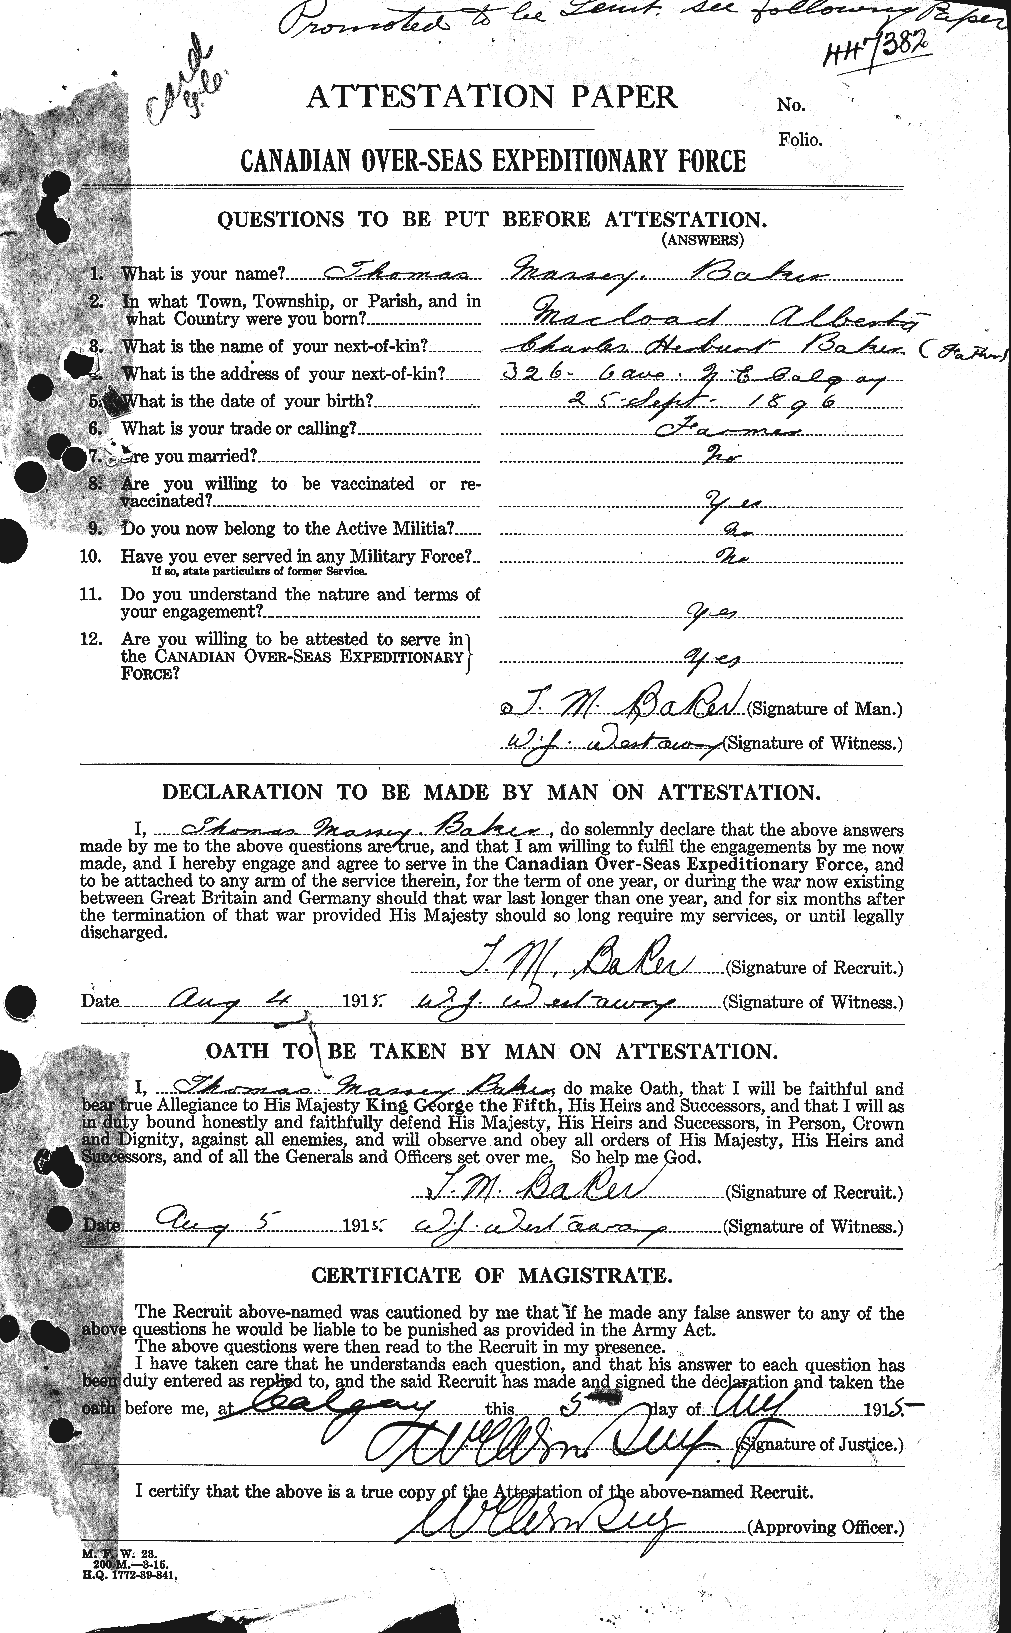 Dossiers du Personnel de la Première Guerre mondiale - CEC 221445a